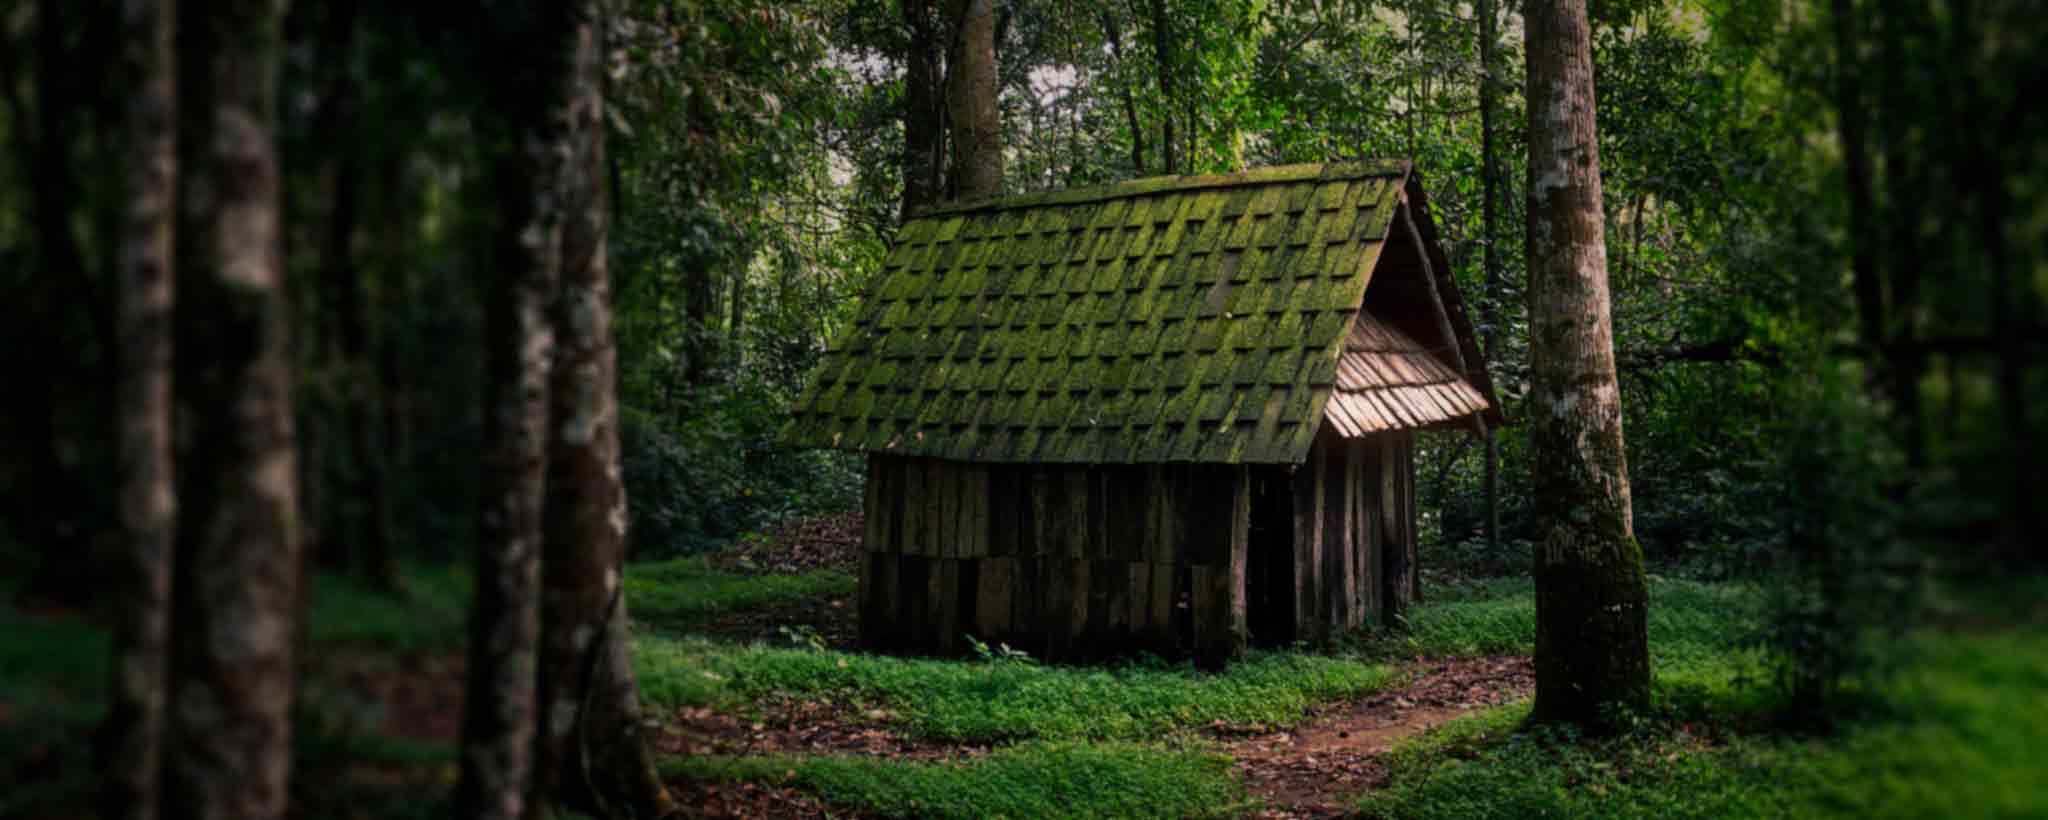 'Green hut'